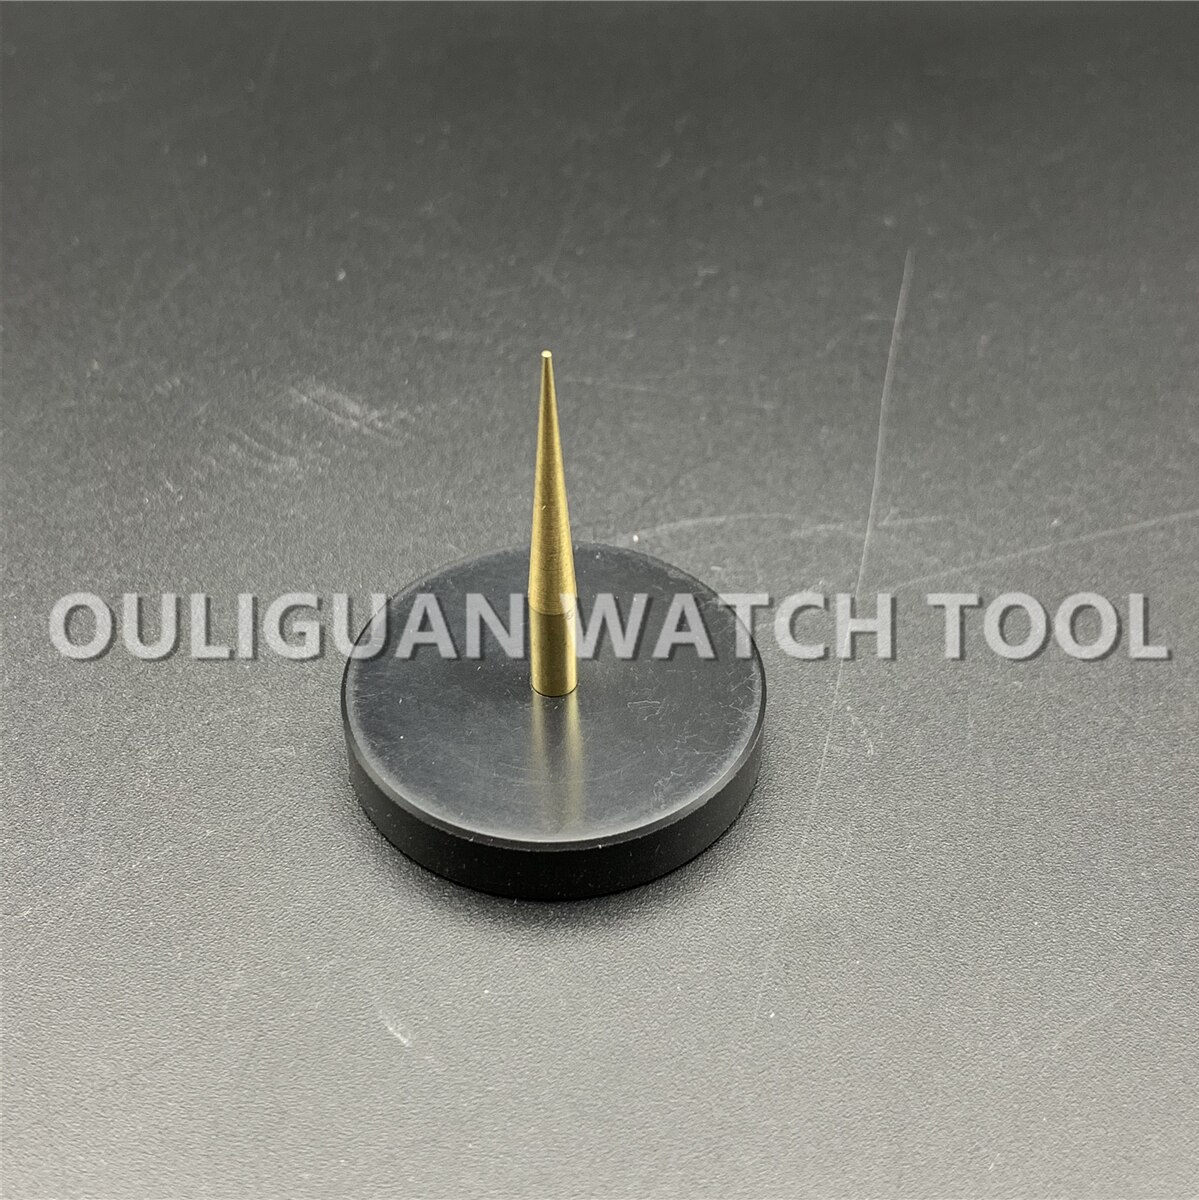 Balanceholder tack værktøj praktisk reparation til ur justere beat rund base slidstyrke metal nål tilbehør holdbart stativ